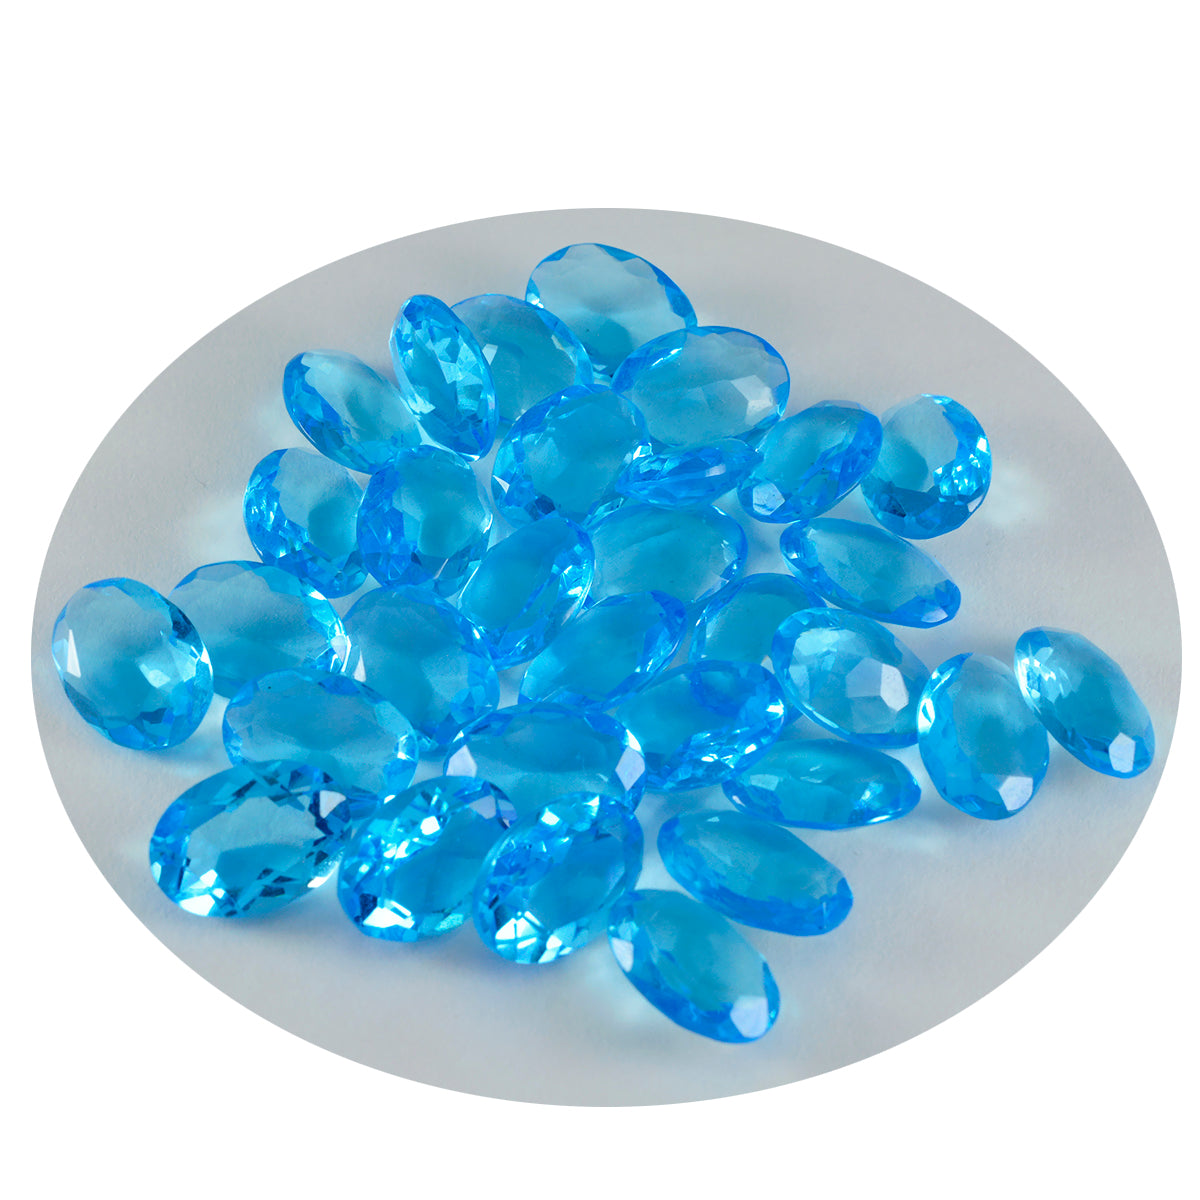 Riyogems 1 pieza Topacio azul CZ facetado 8x10mm forma ovalada calidad atractiva gema suelta